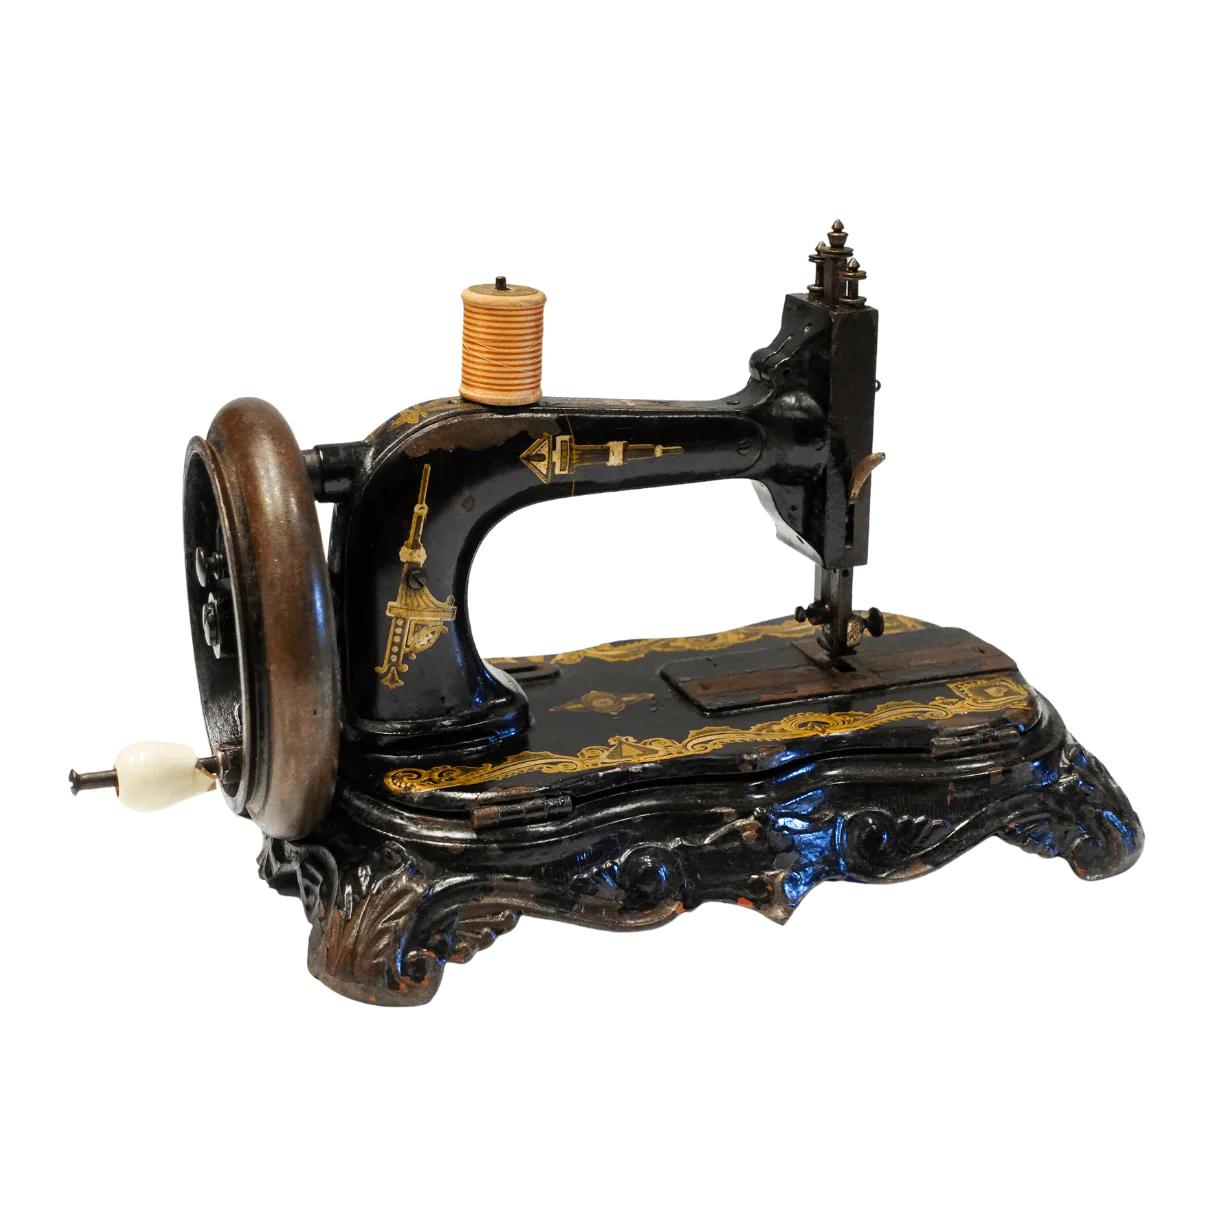 Como hacer una Mesa con el Pie de una maquina de coser antigua